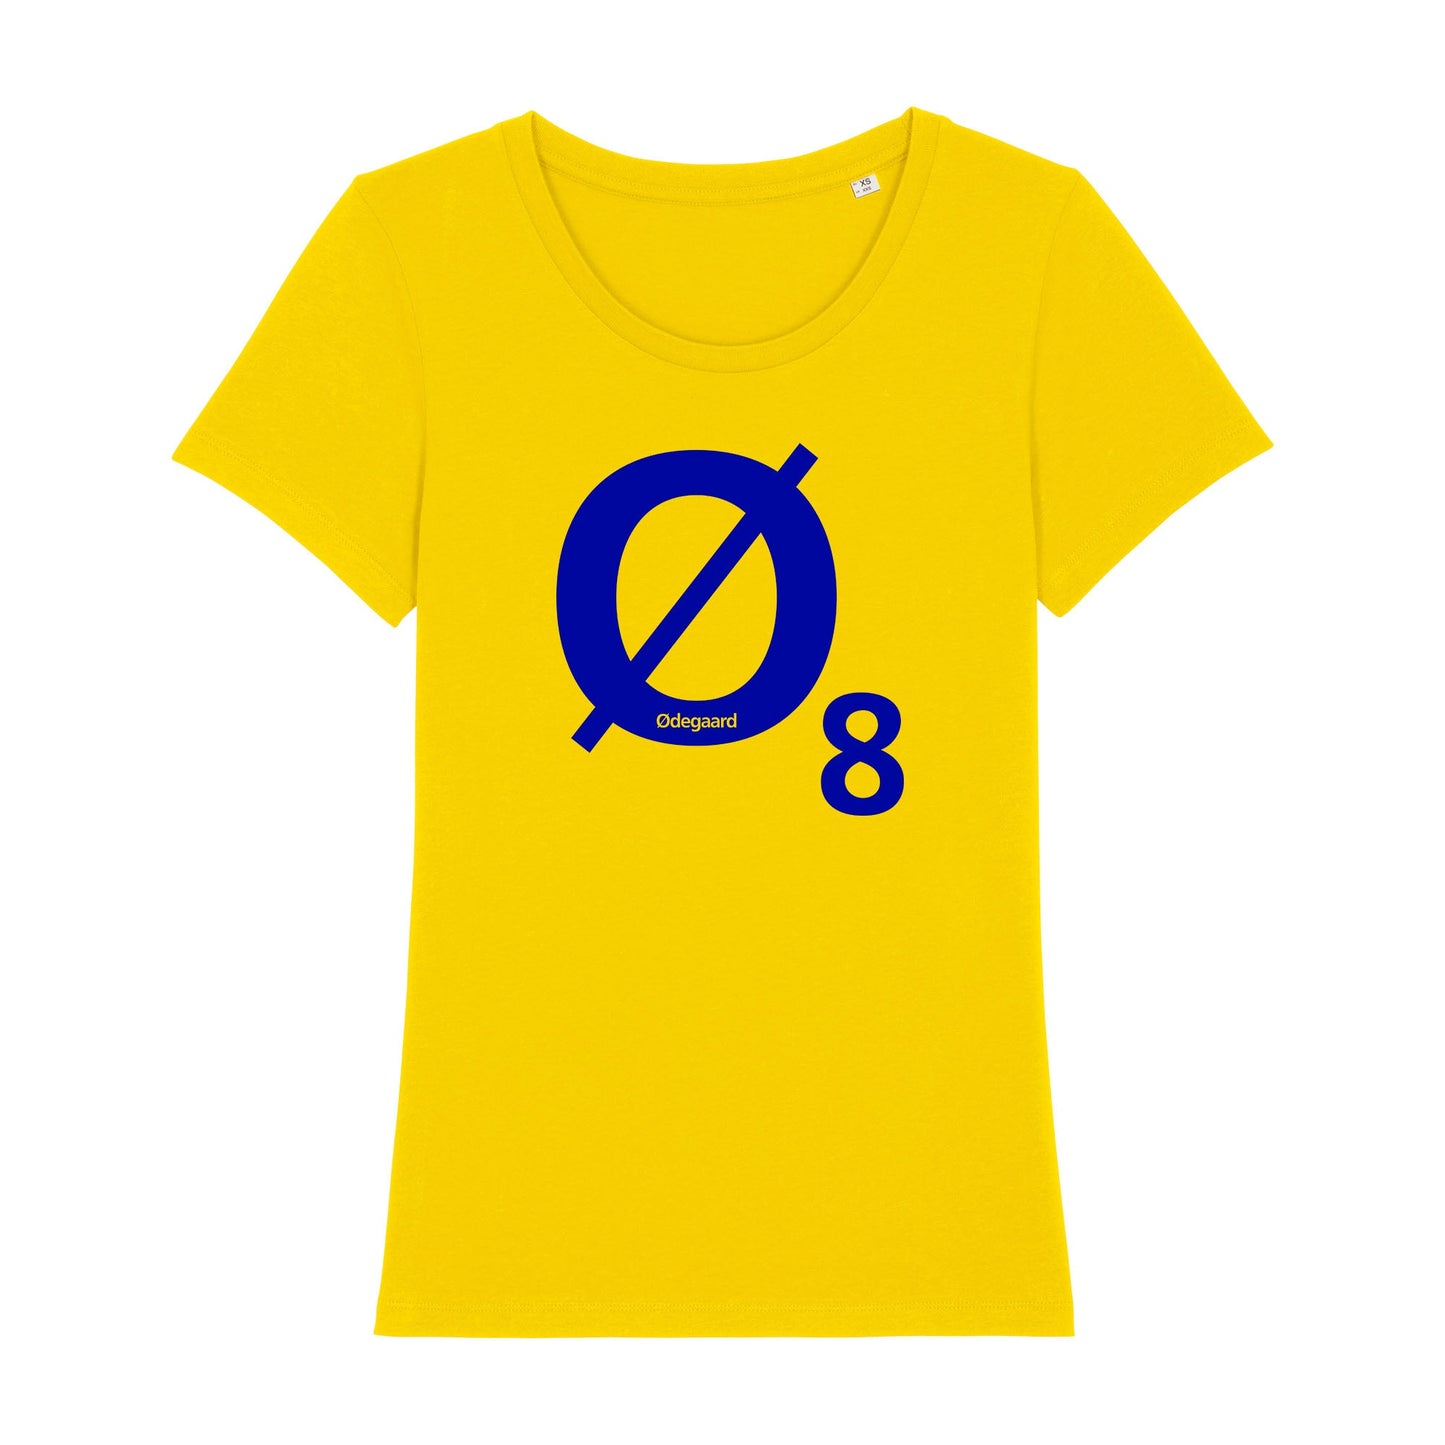 Ødegaard8 Women's Fit T-shirt